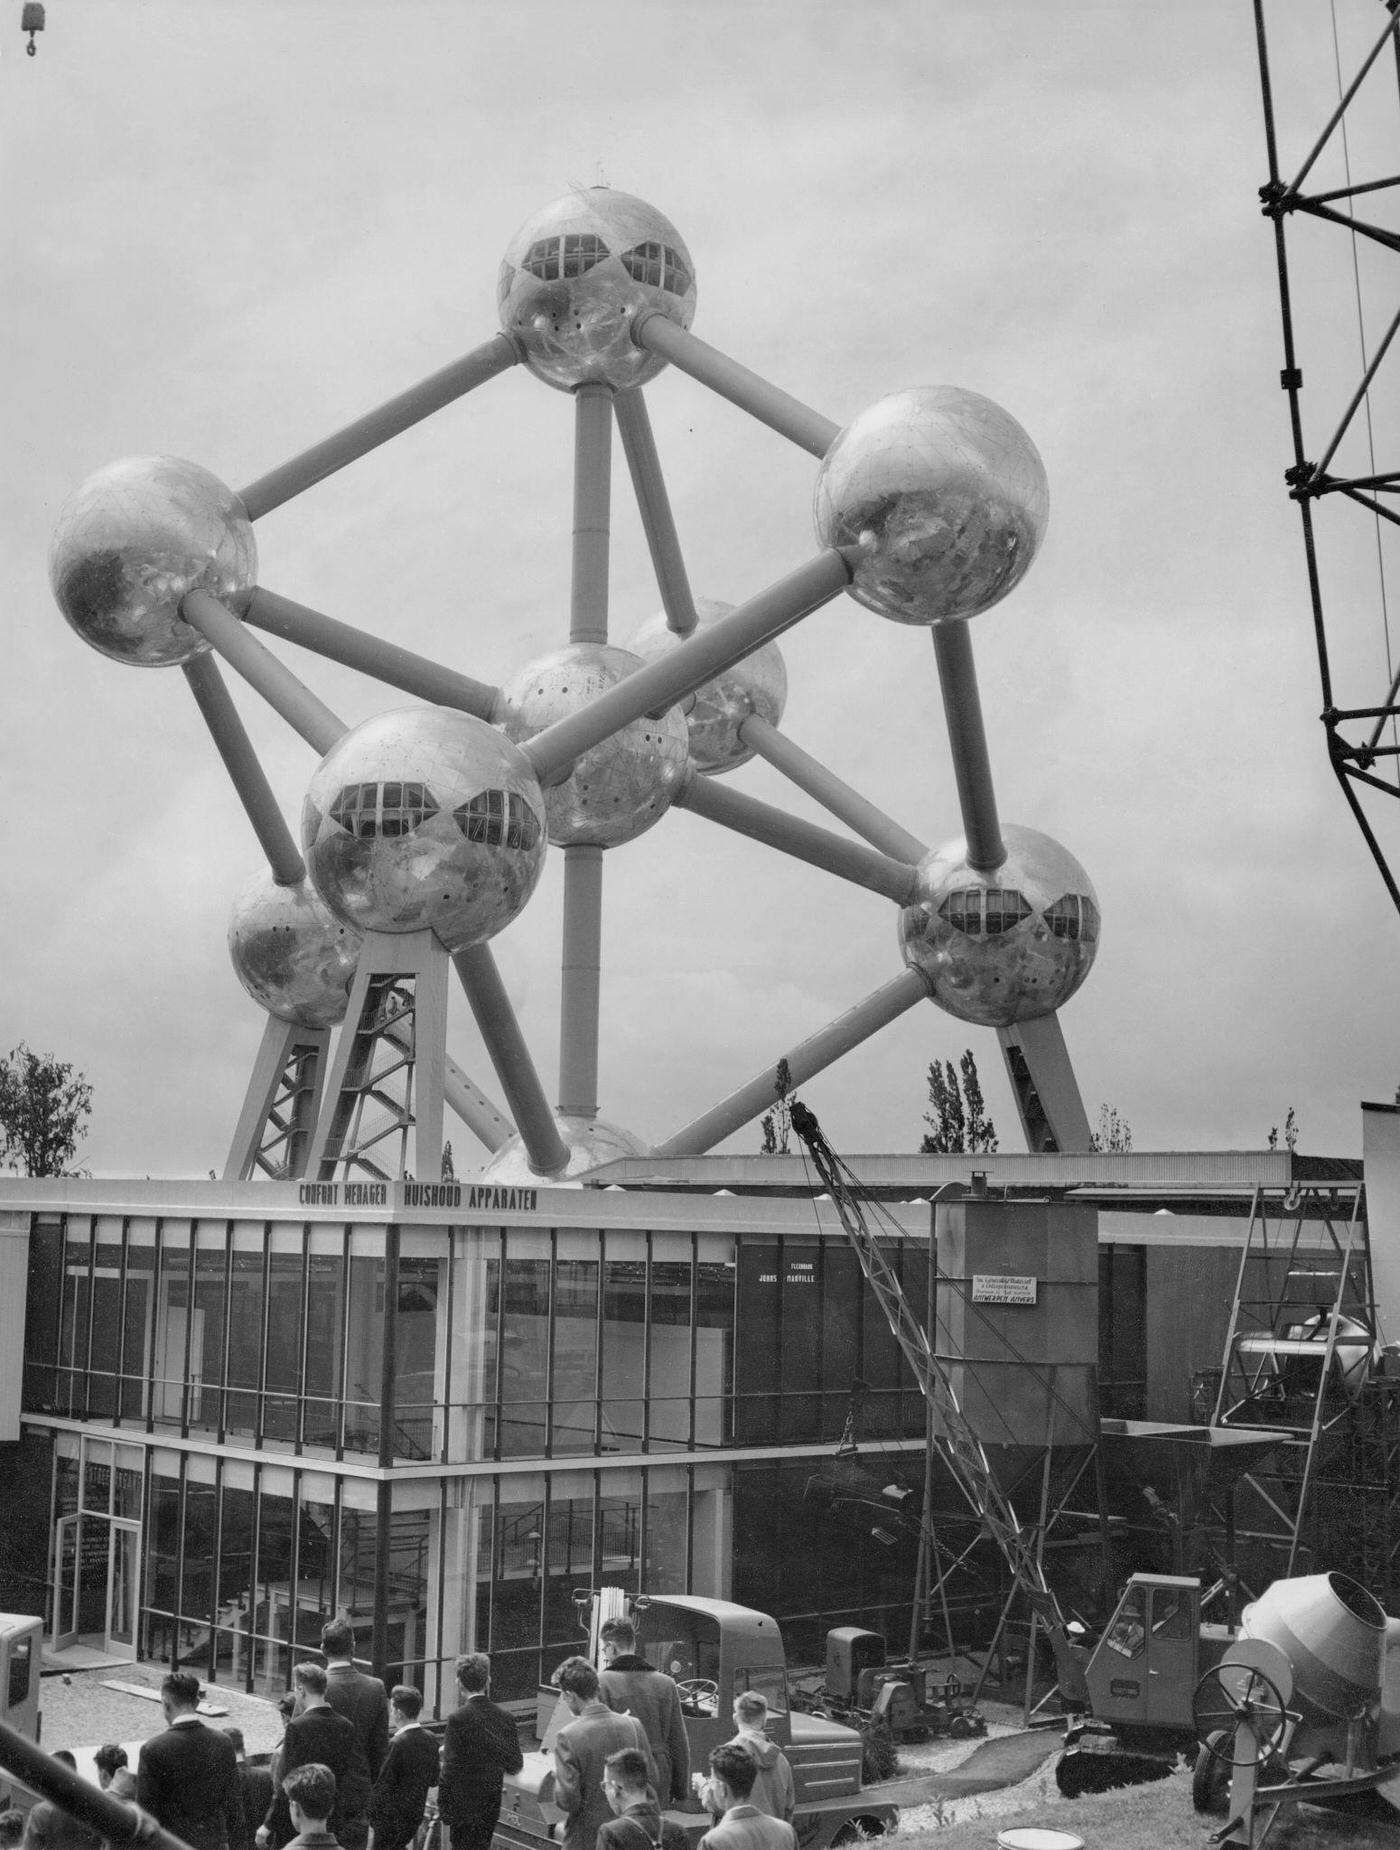 Atomium and Belgian Pavilion